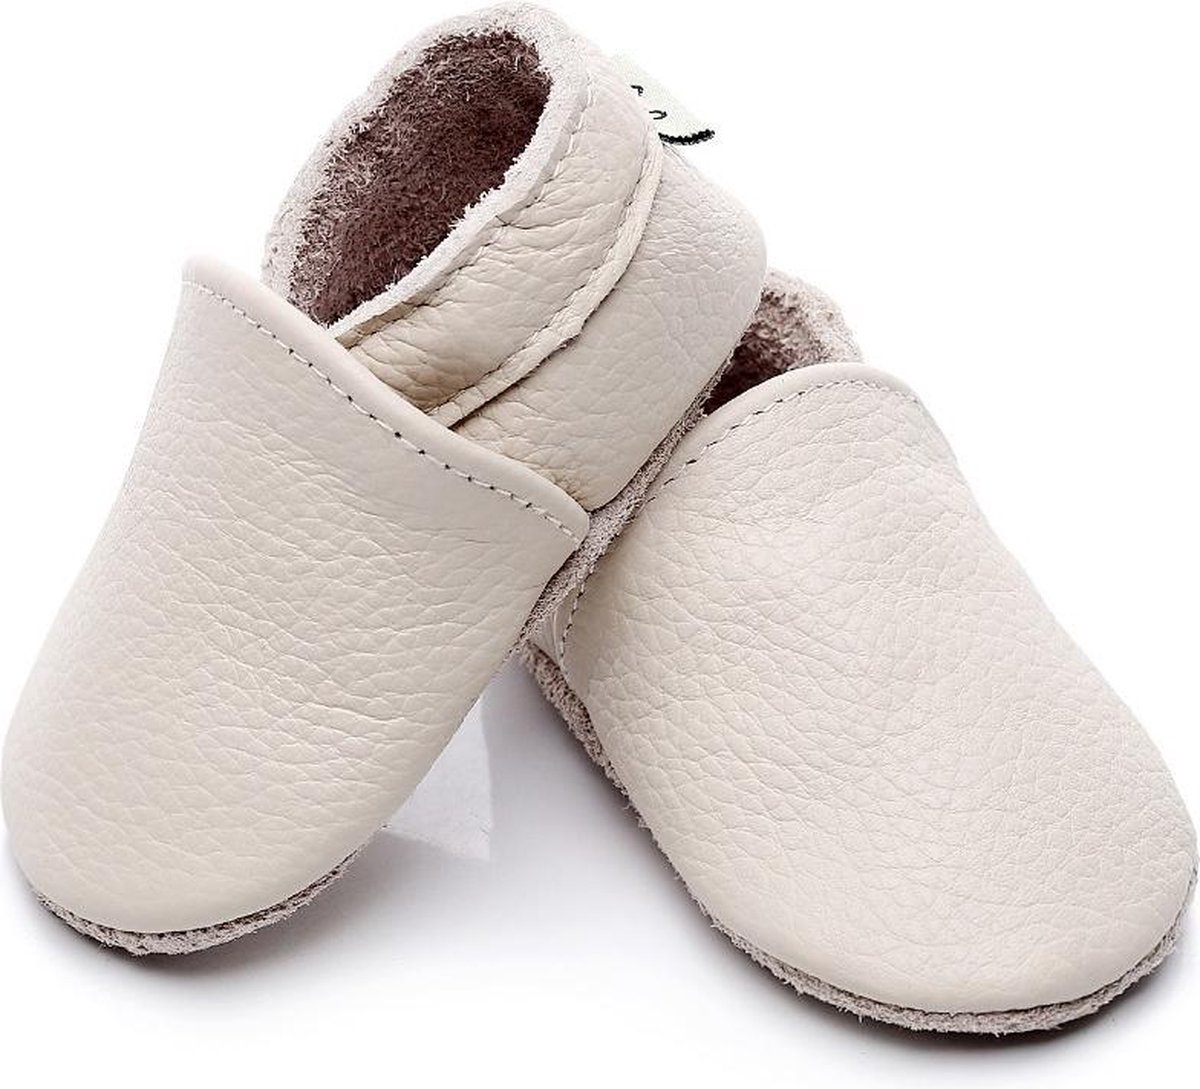 Chaussures bébé garçon (18-24)